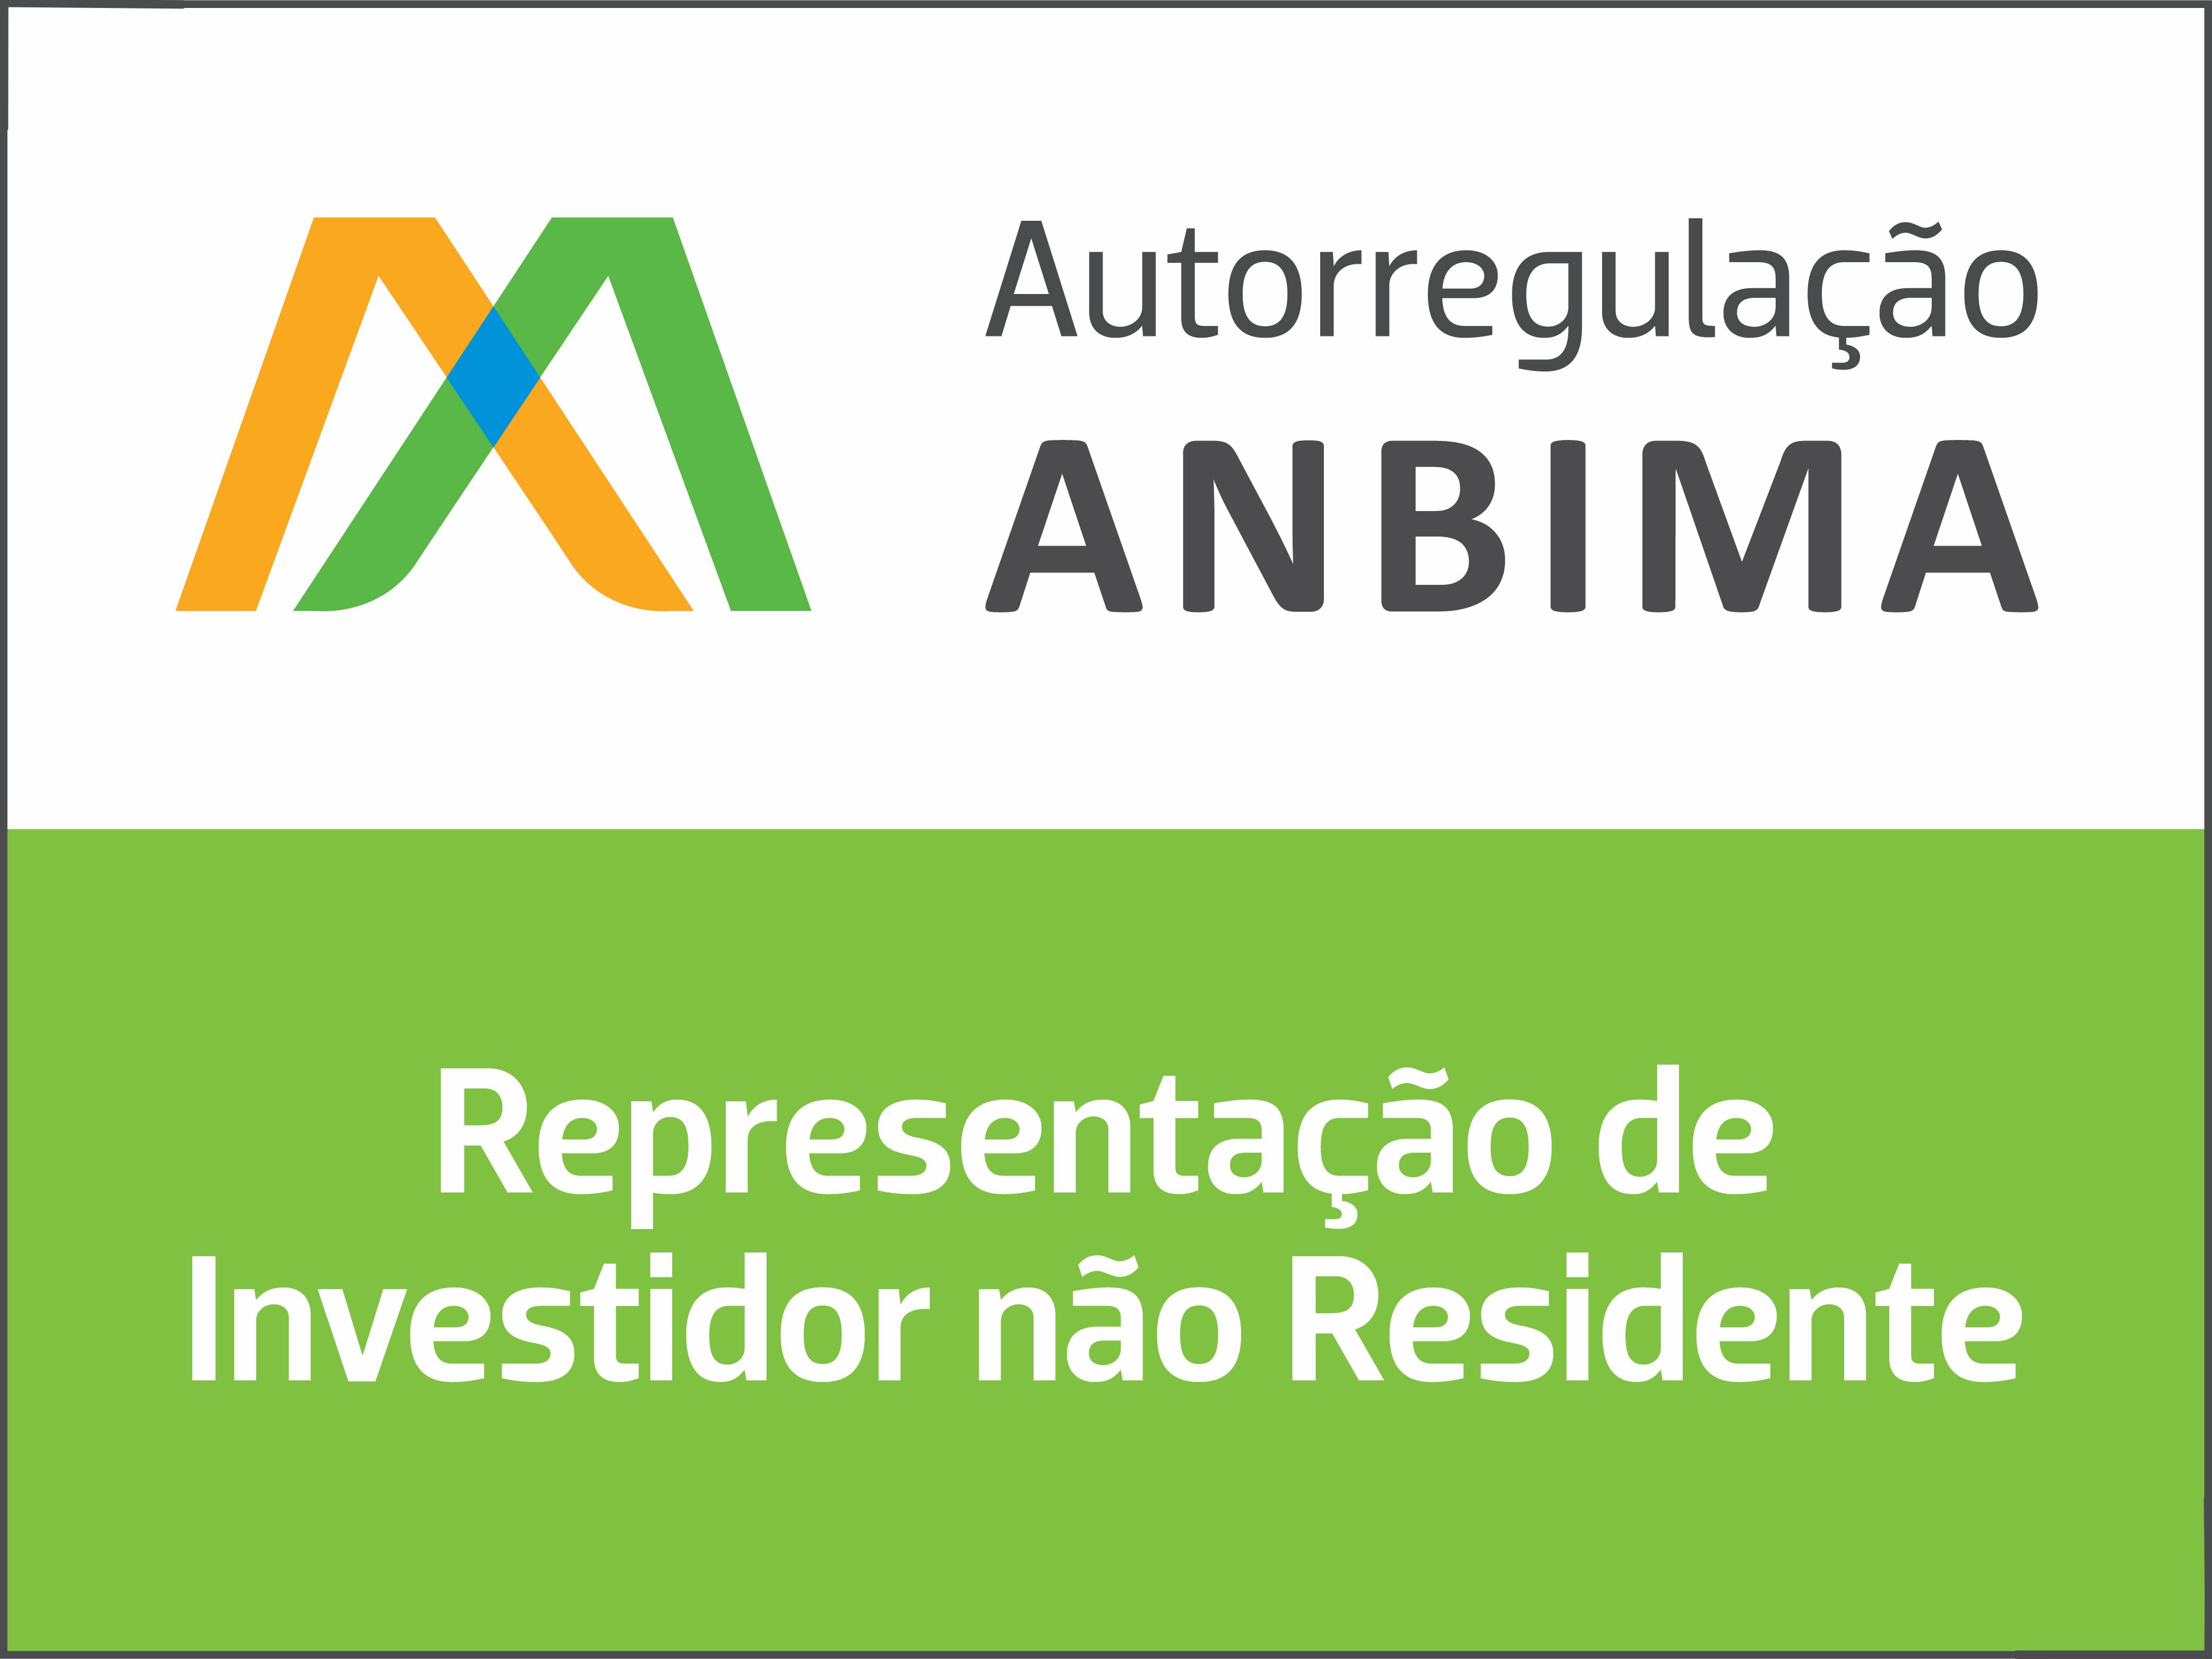 Selo Anbima Representacao de Investidor nao Residente Permanente